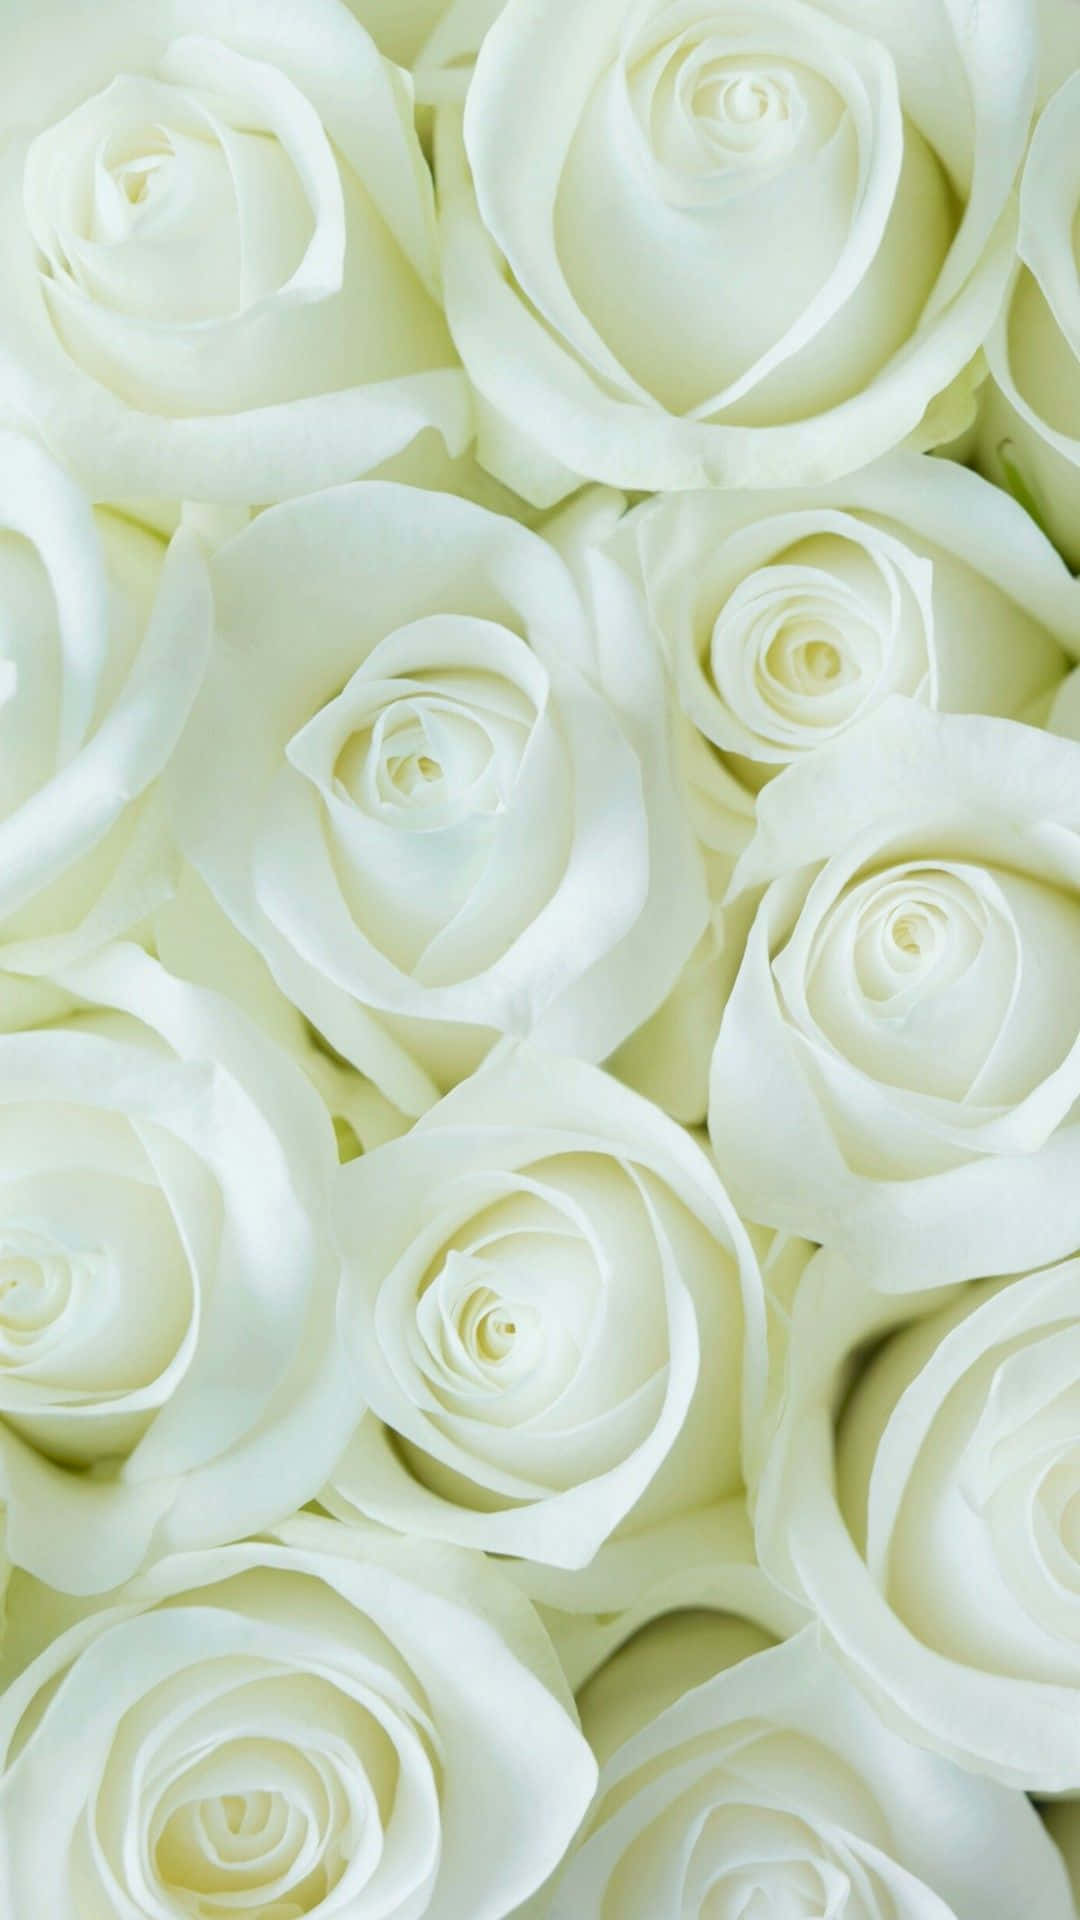 Subtle White Rose Flowers Background